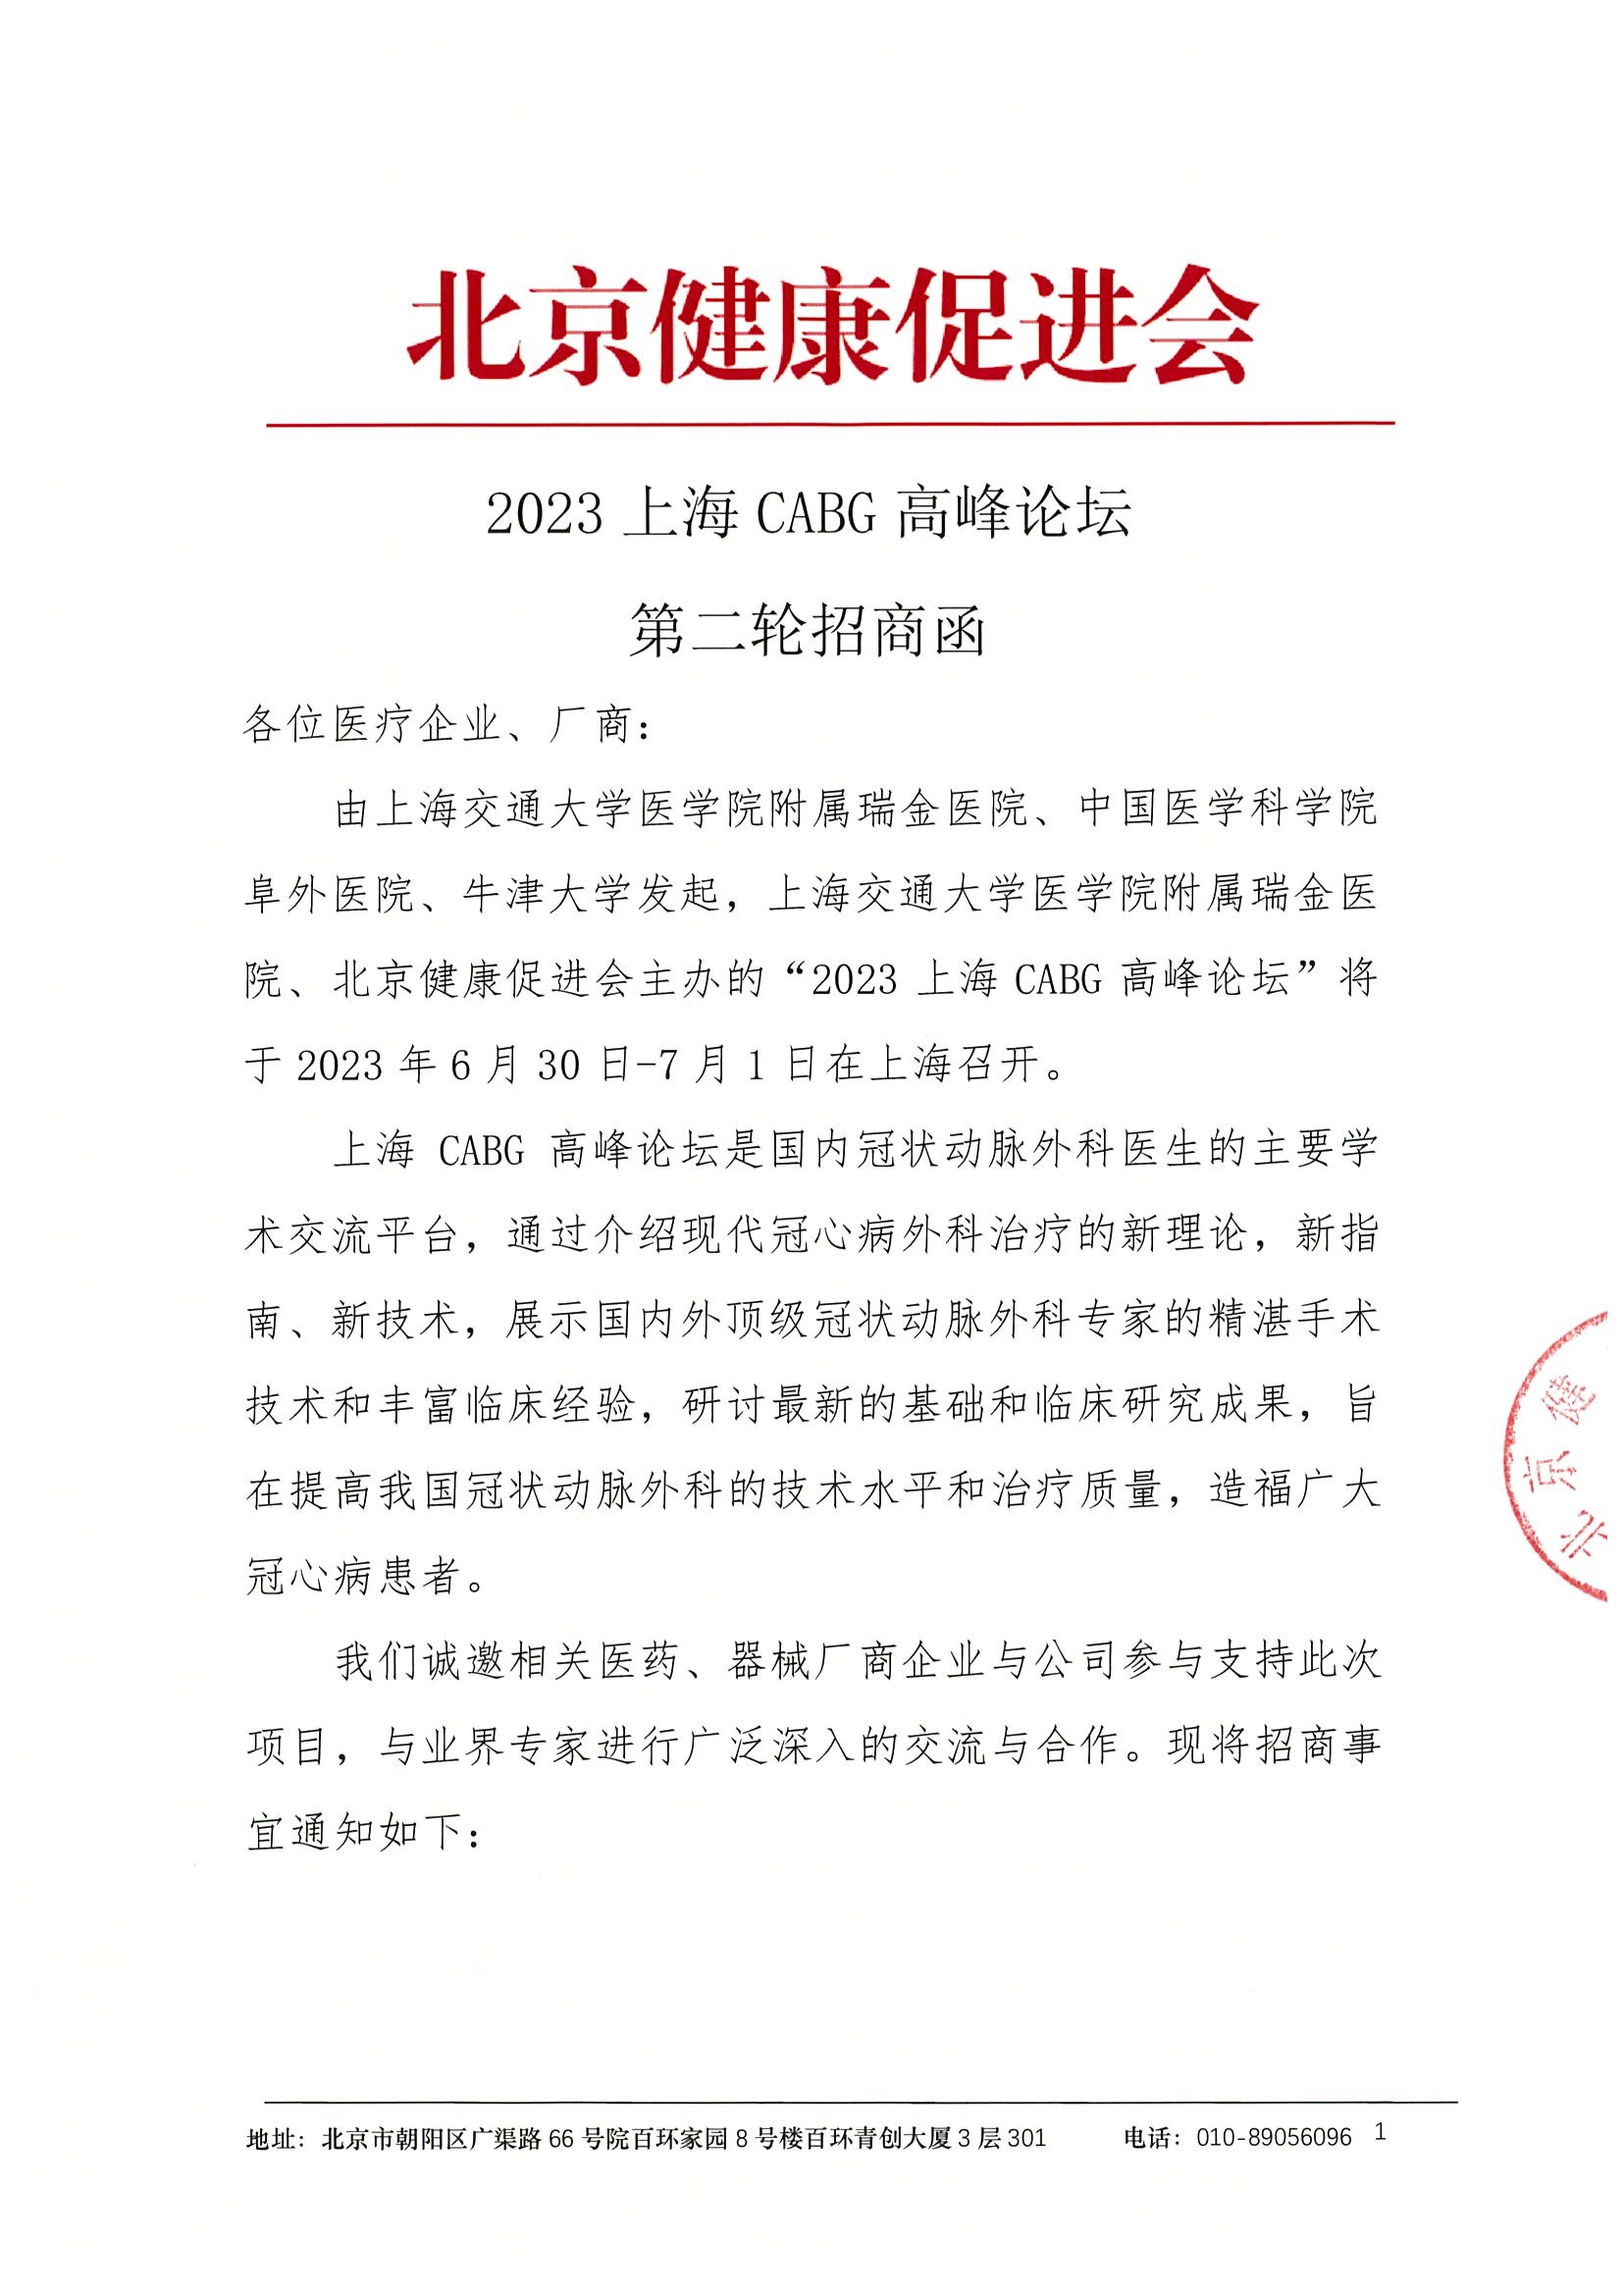 2023上海CABG高峰论坛-第二轮招商函.jpeg